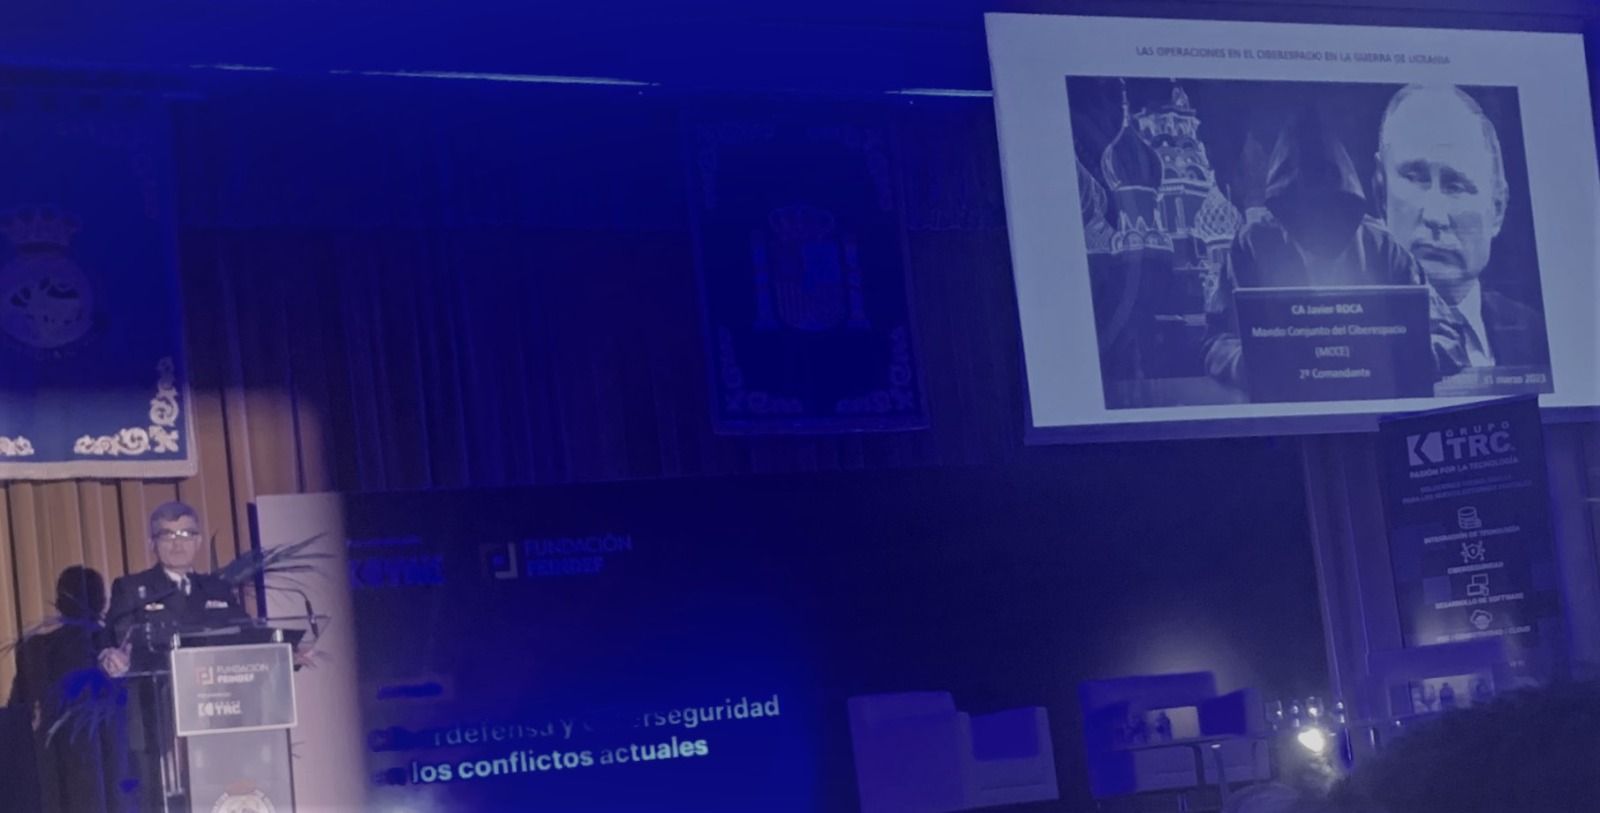 "Jornada de Ciberdefensa y Ciberseguridad en los conflictos actuales", organizada por la Fundación FEINDEF